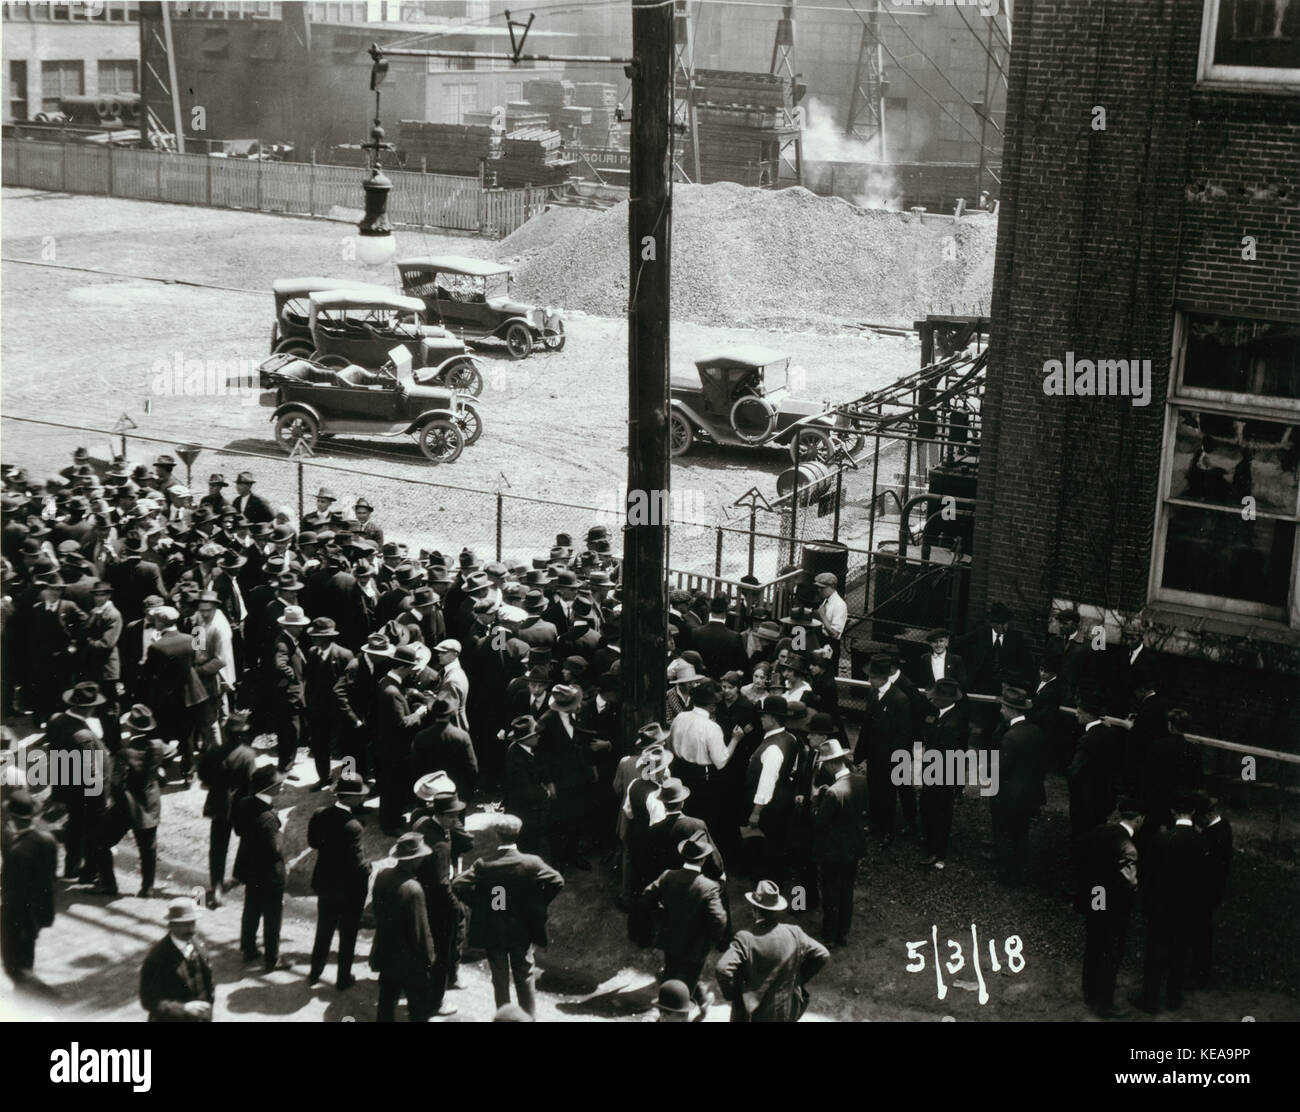 Wagner Electric Company Streik, mehrere Personen außerhalb von Gebäude versammelt, einige in der Konfrontation stellt, wie Sie mit einander unterhalten. 3. Mai 1918 Stockfoto